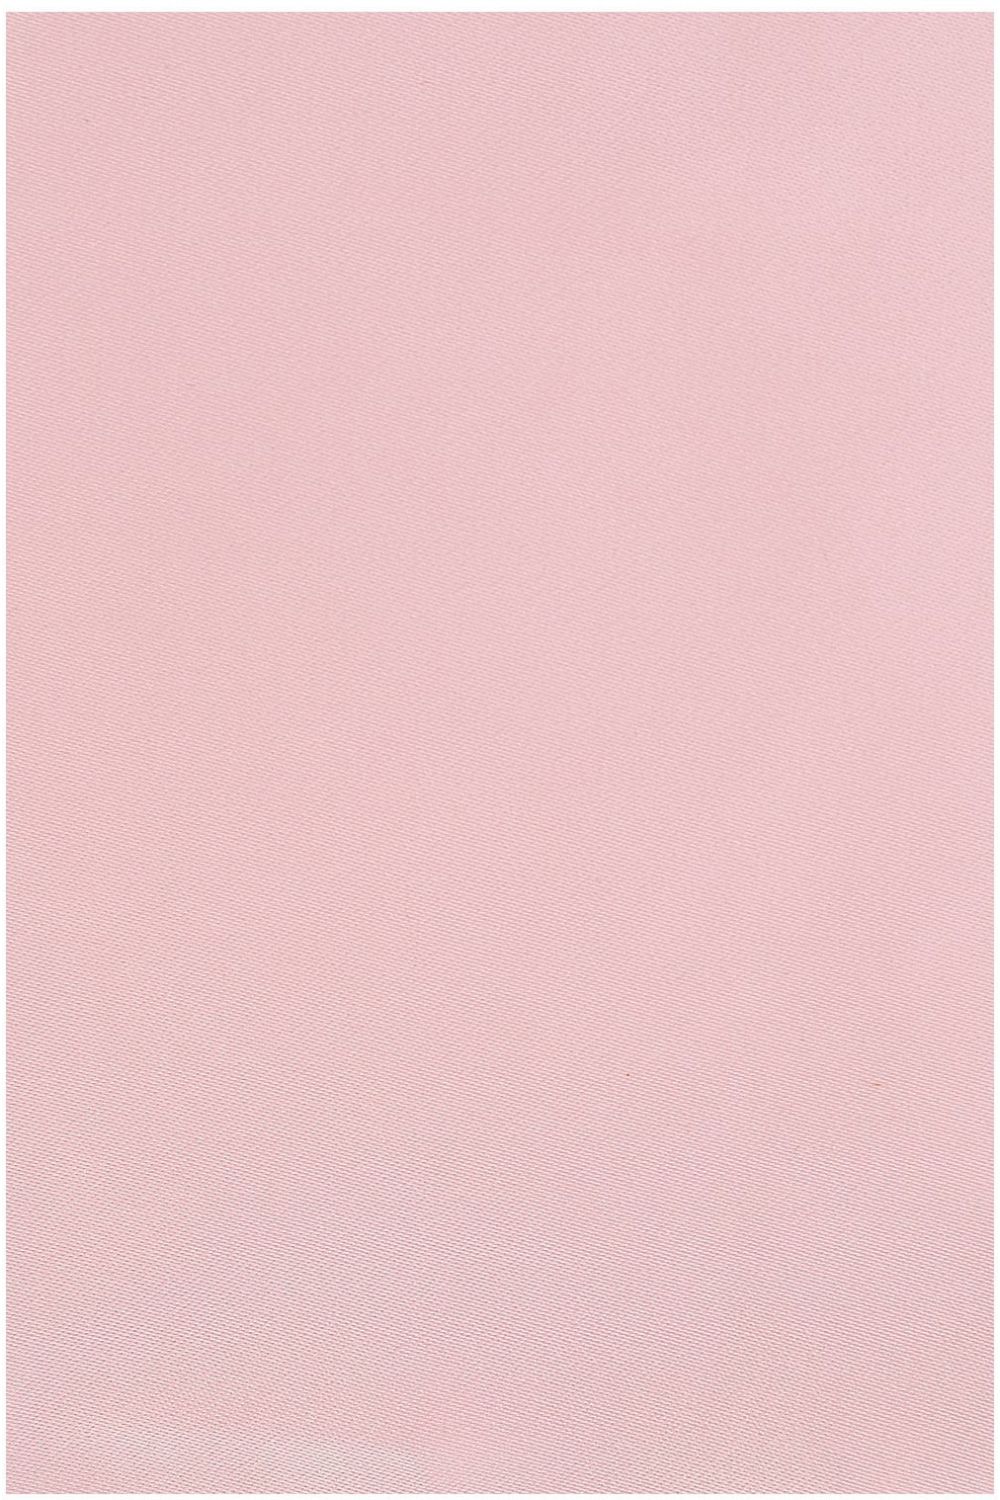 Plain Pastel Pink satin pocket square